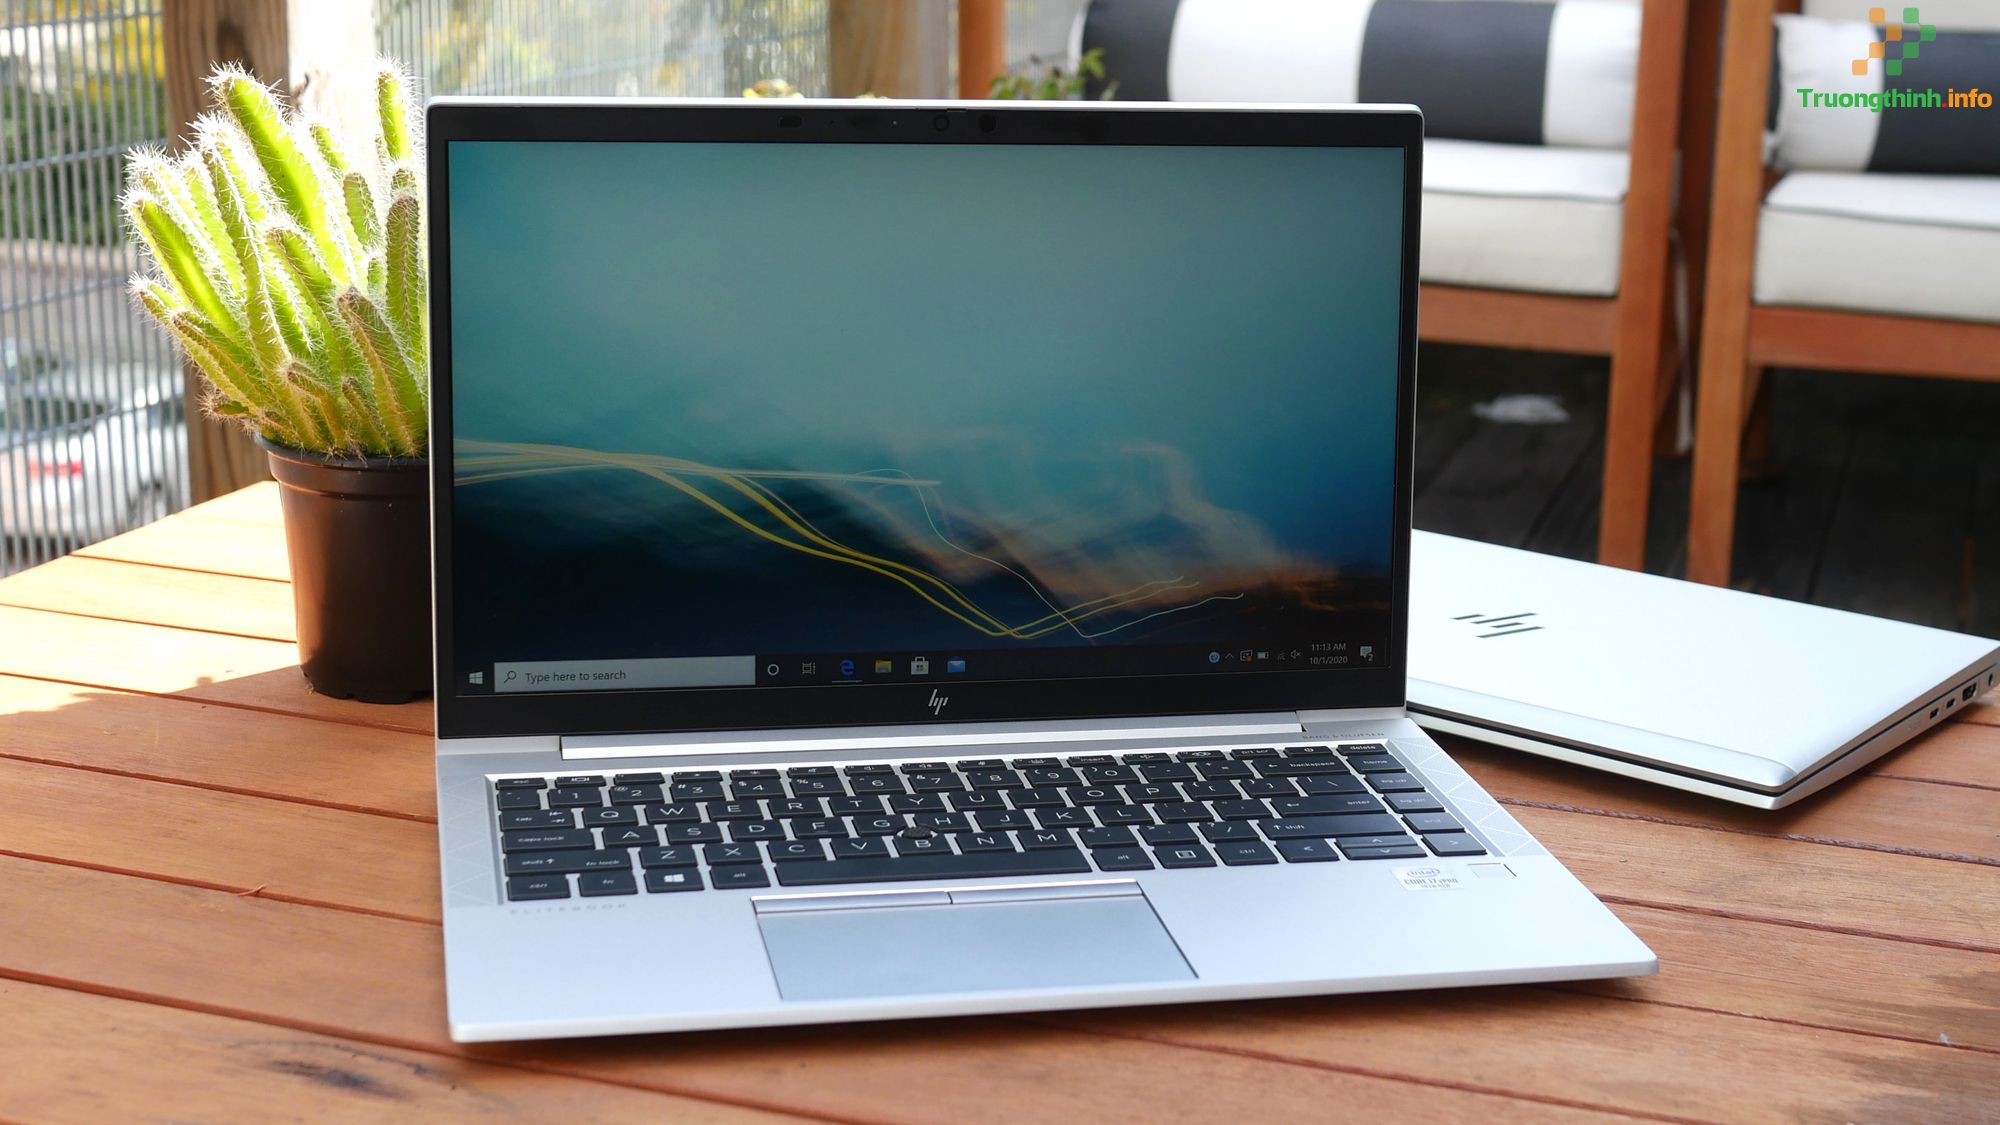 mua bán sửa thay loa Laptop Hp 840 G7 Giá Rẻ | Vi Tính Trường Thịnh